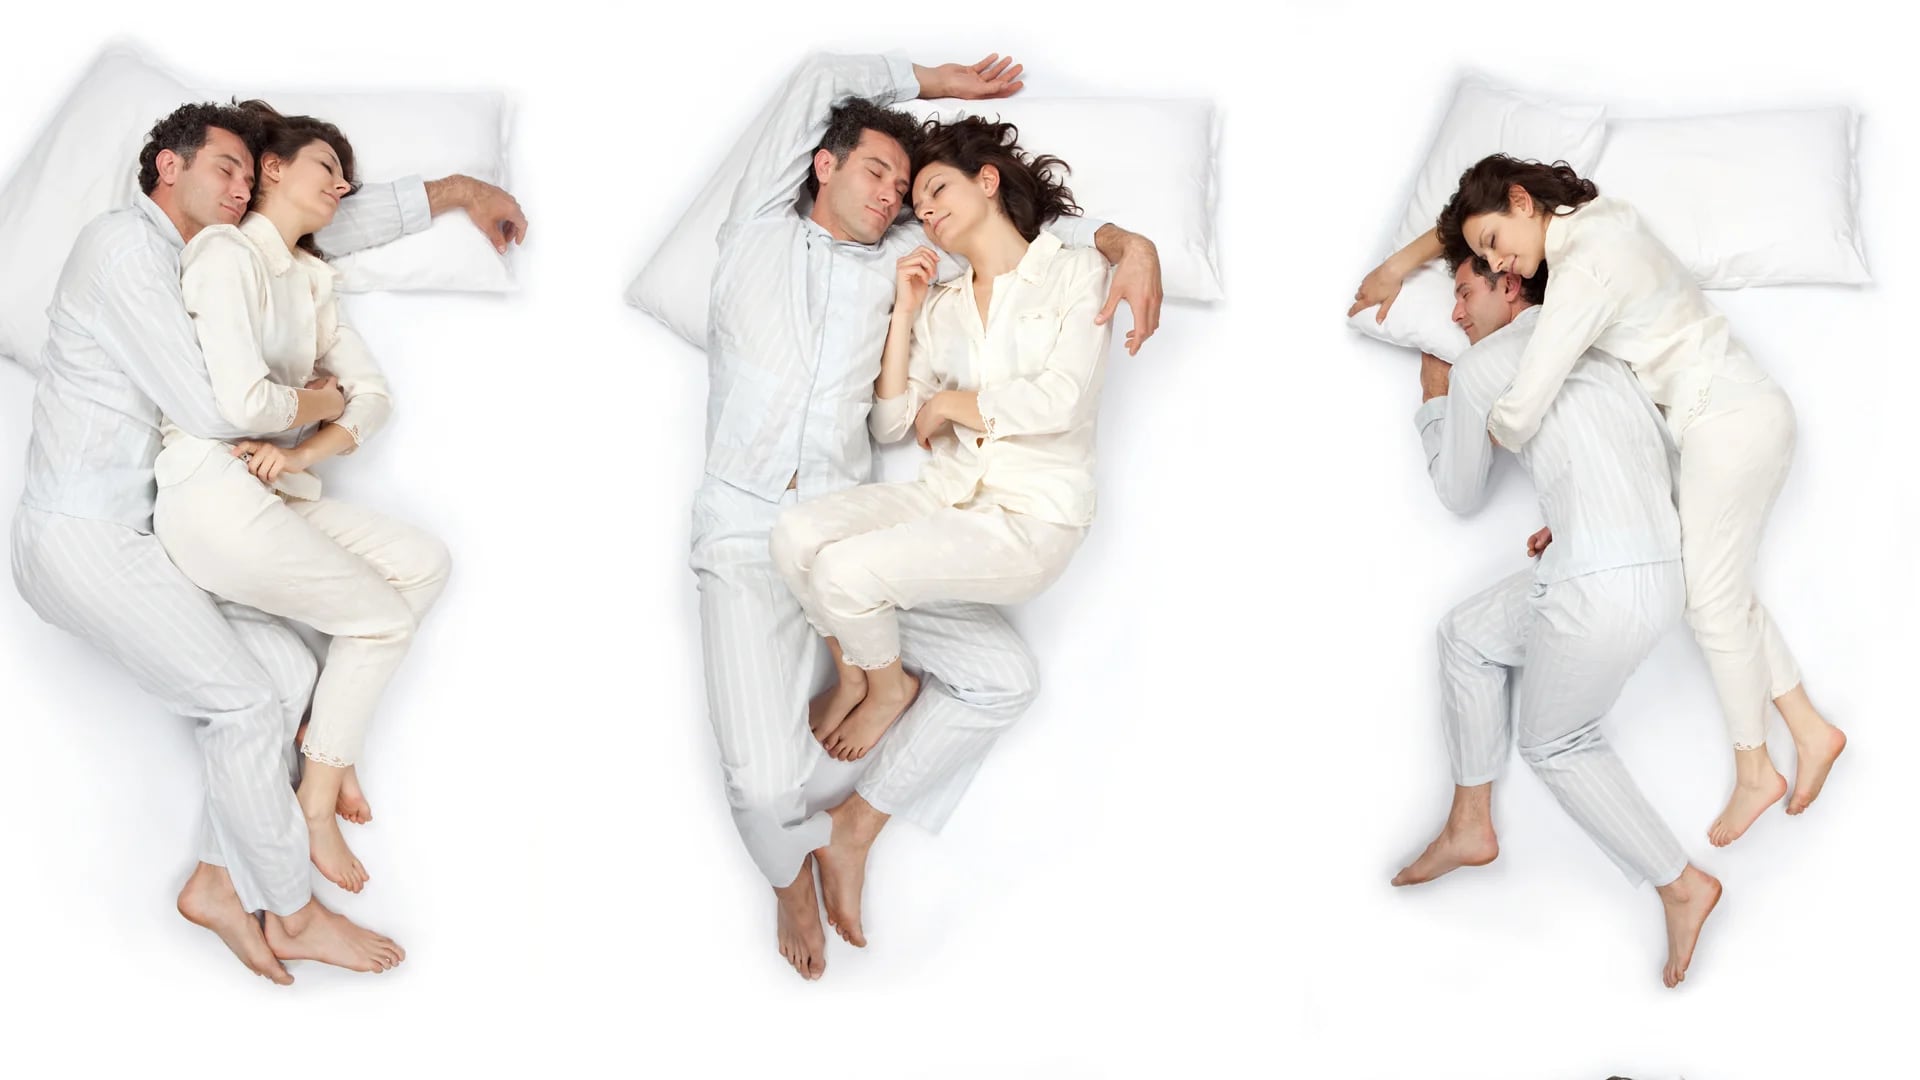 La posición en la que duerme una pareja revela mucho de la relación (iStock)